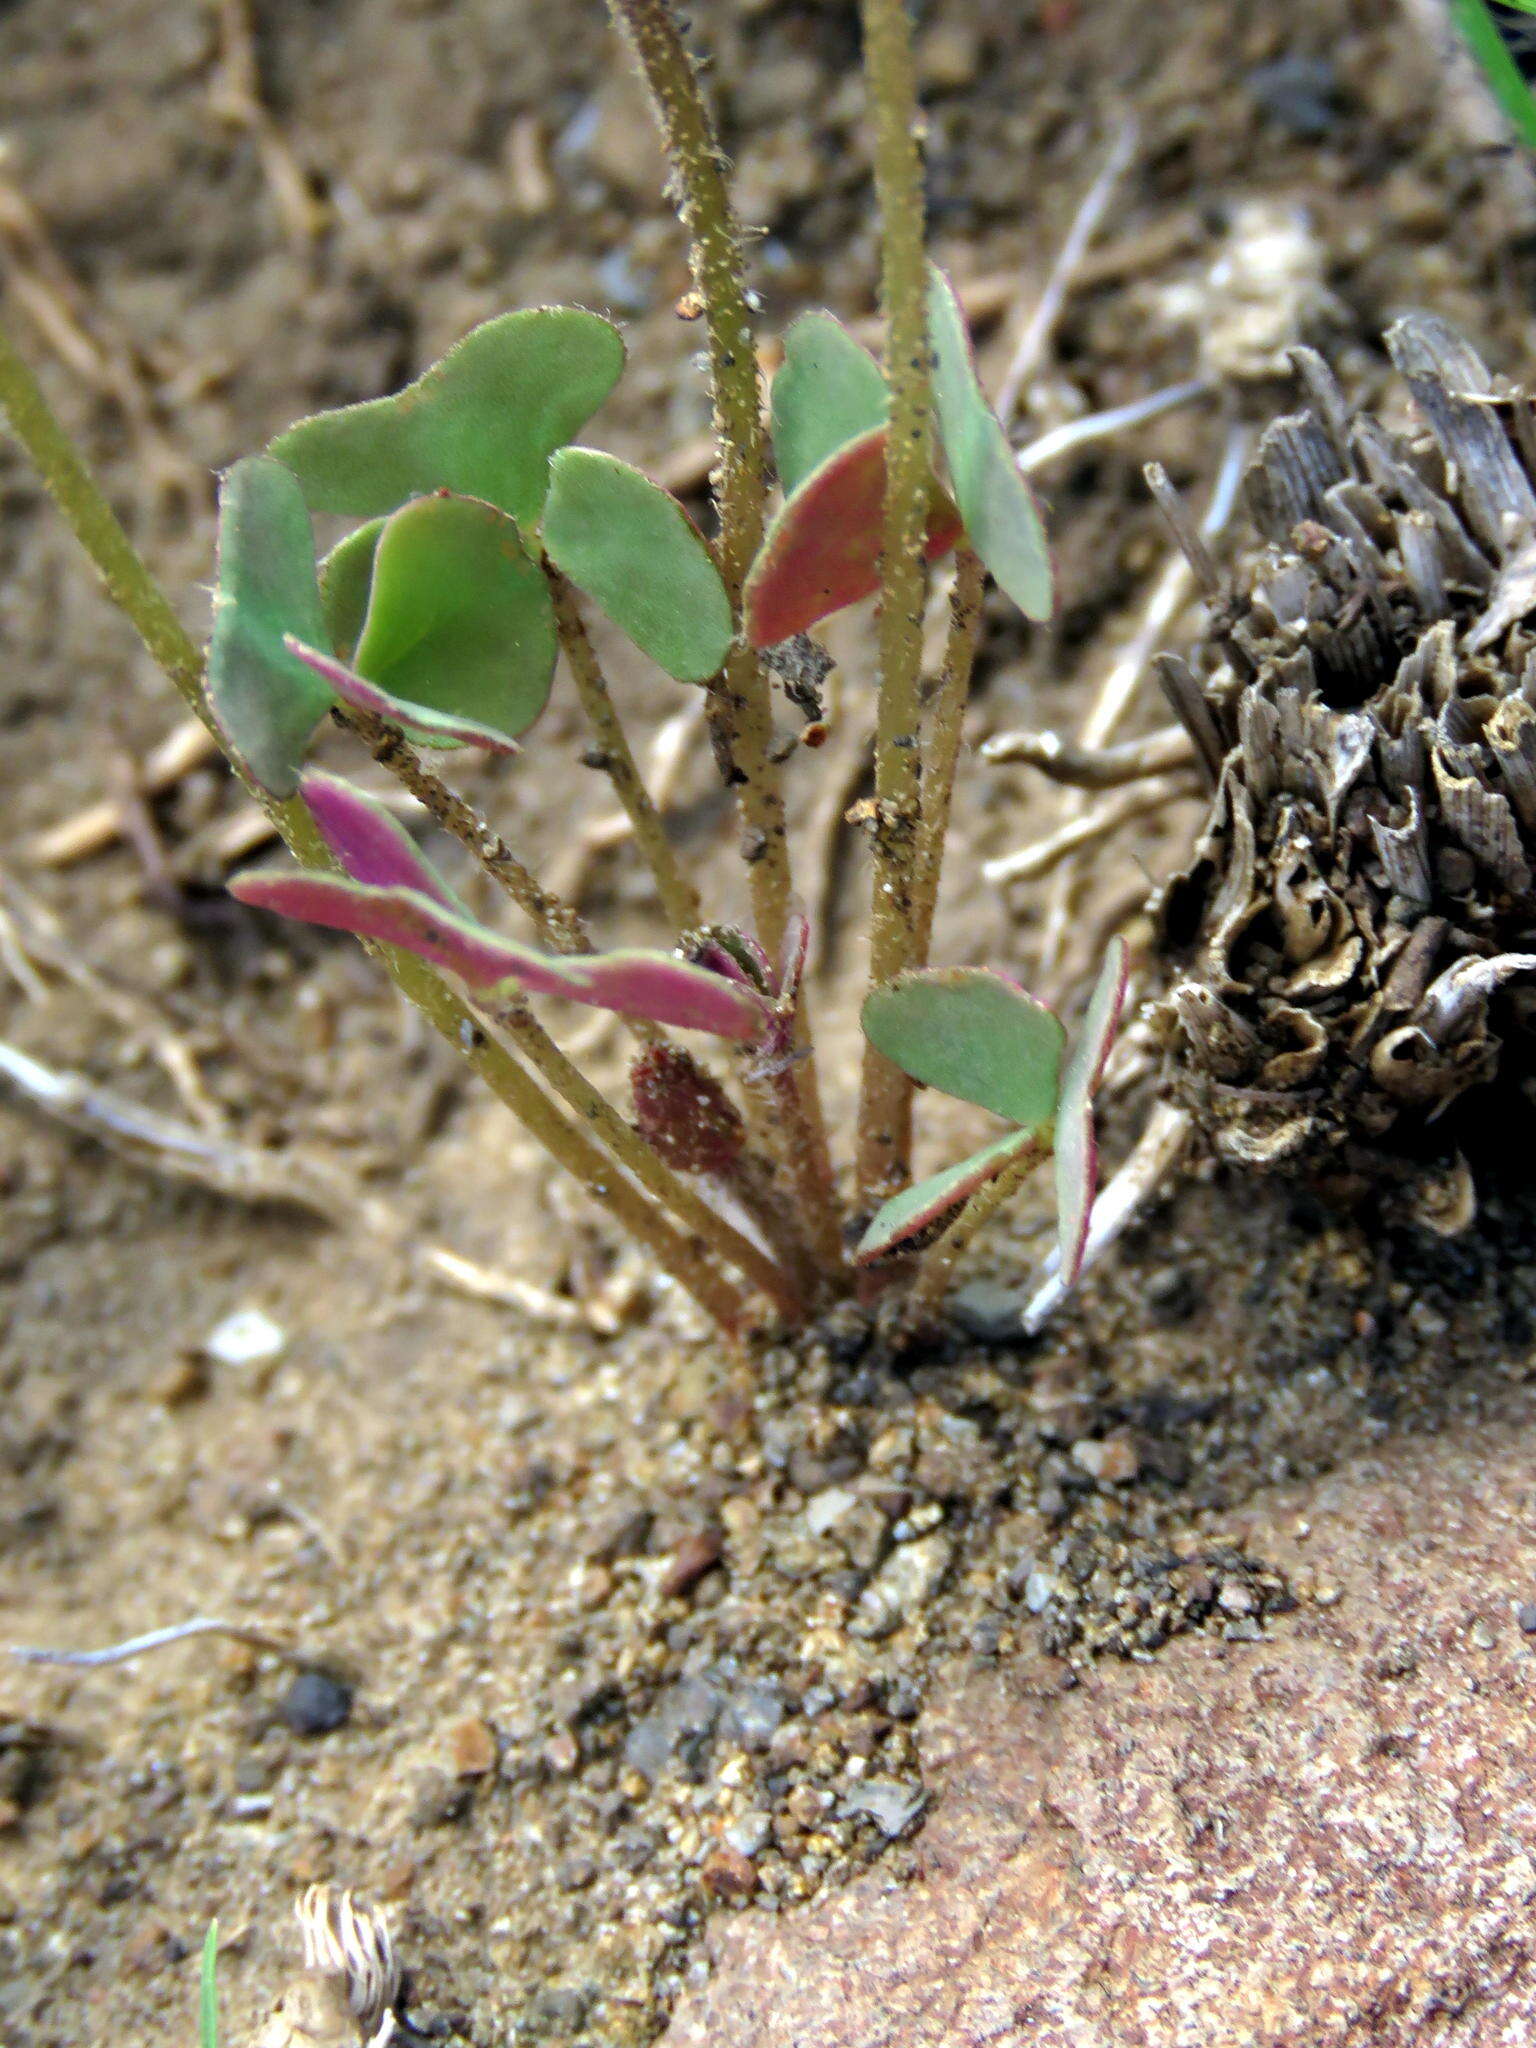 Image of Oblique-leaf sorrel